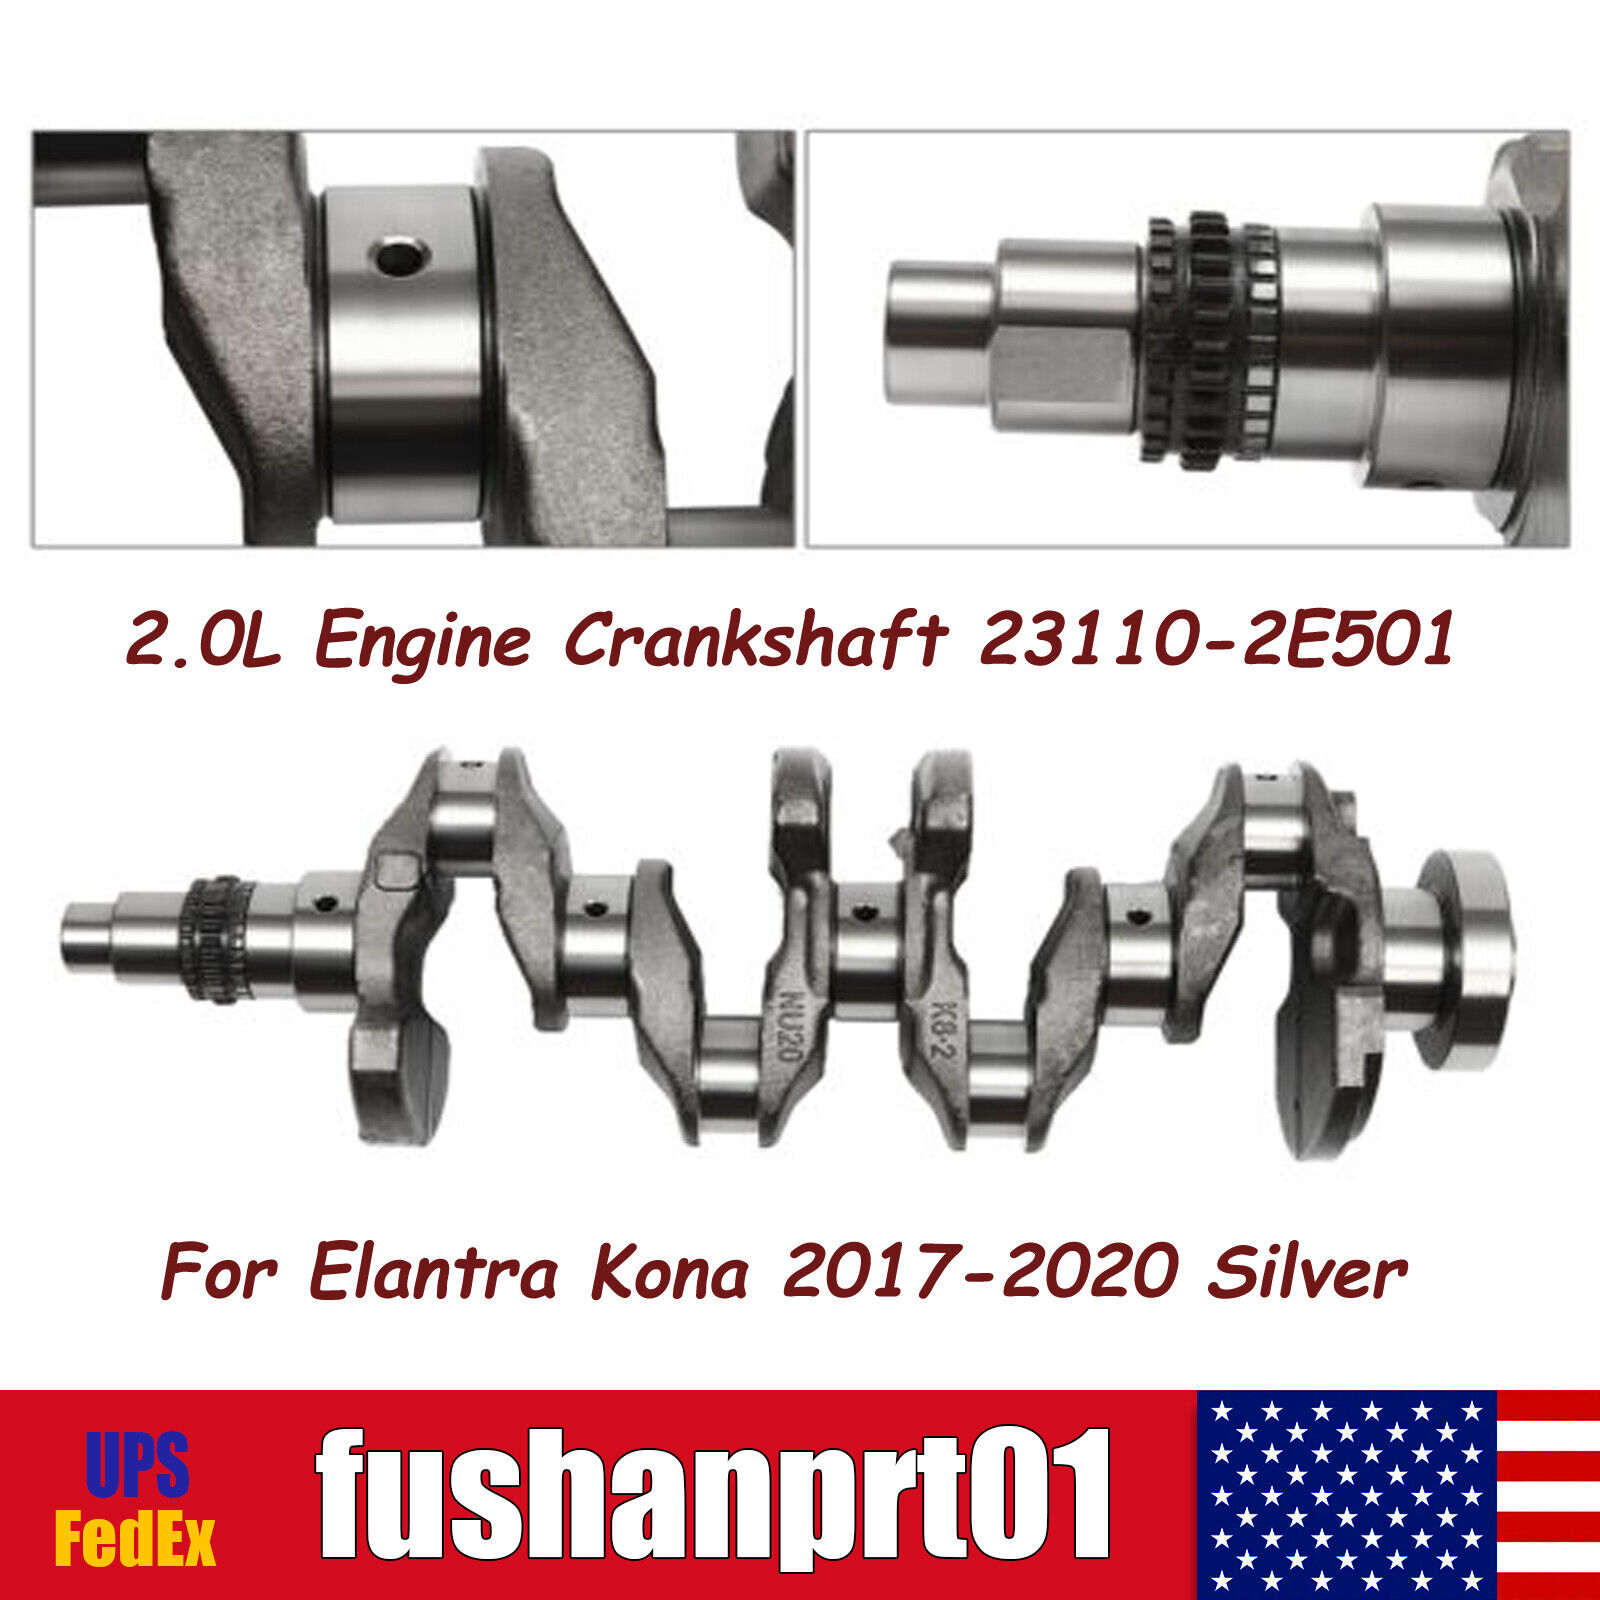 2.0L Engine Crankshaft 23110-2E501 For Elantra Kona 2017 2018 2019 2020 Silver